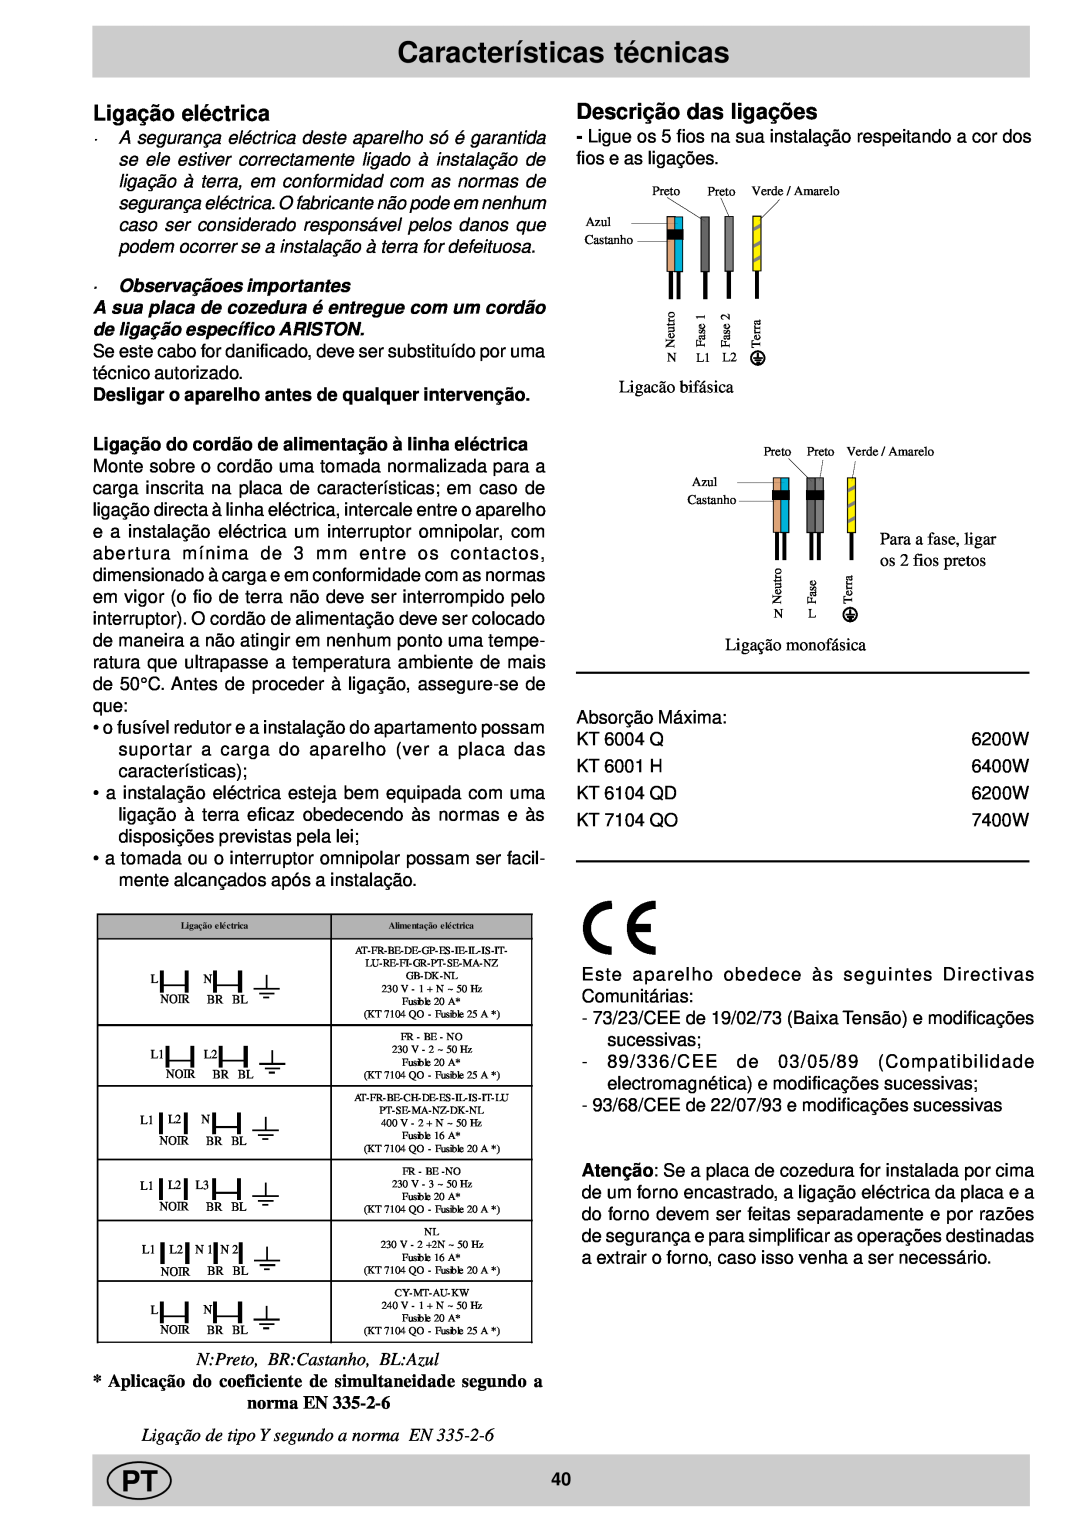 Ariston KT 8104 QO Características técnicas, Ligação eléctrica, Descrição das ligações, N Preto, BR Castanho, BL Azul 